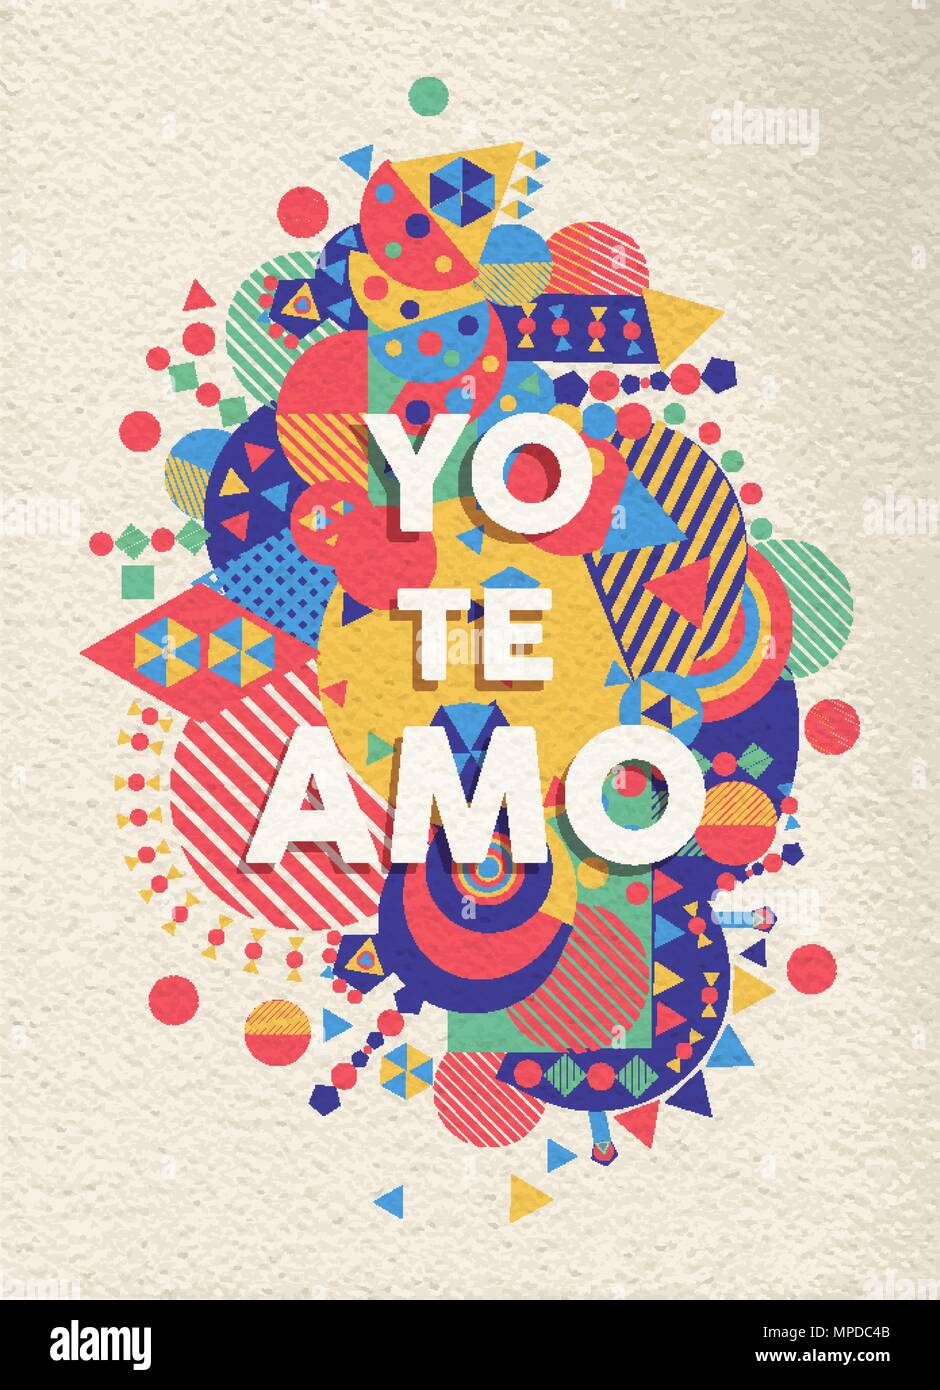 Ich liebe Sie bunte Typografie Plakat in spanischer Sprache. Romantische Zitat Design mit Papier Textur Hintergrund. EPS 10 Vektor. Stock Vektor